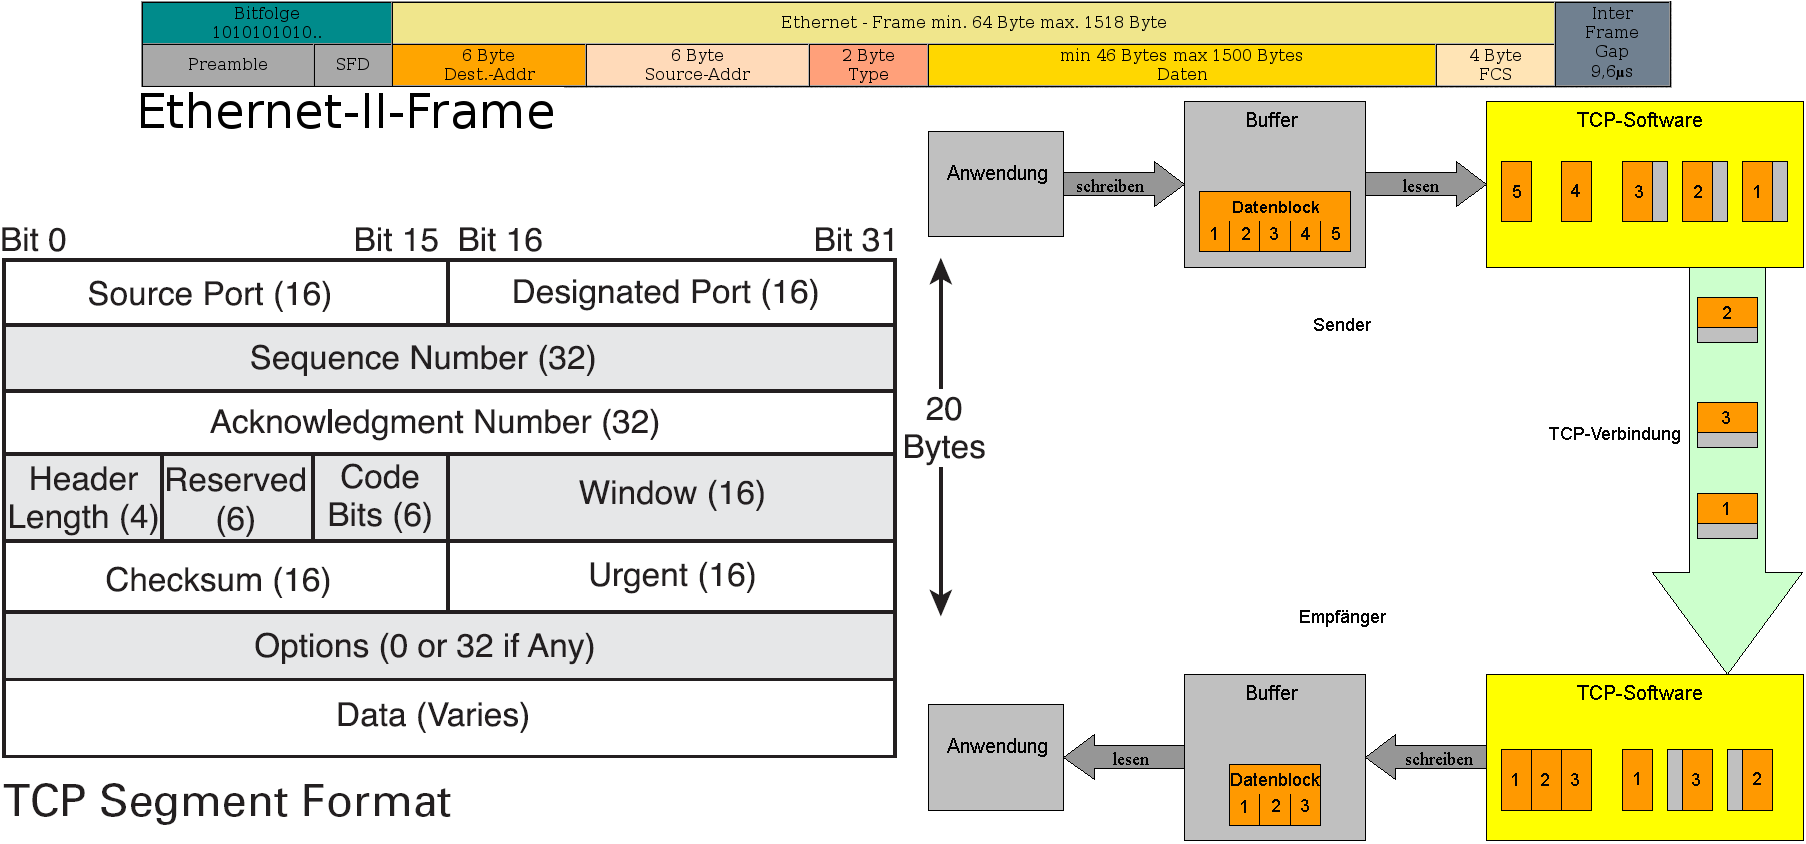 3.4.1 TCP Allgemeines: TCP ist eine Software-Funktionssammlung, die bei Linux z.b. im Kernel integriert ist. Ein TCP-Segment besteht immer aus zwei Teilen - dem Header und der Nutzlast (Payload).